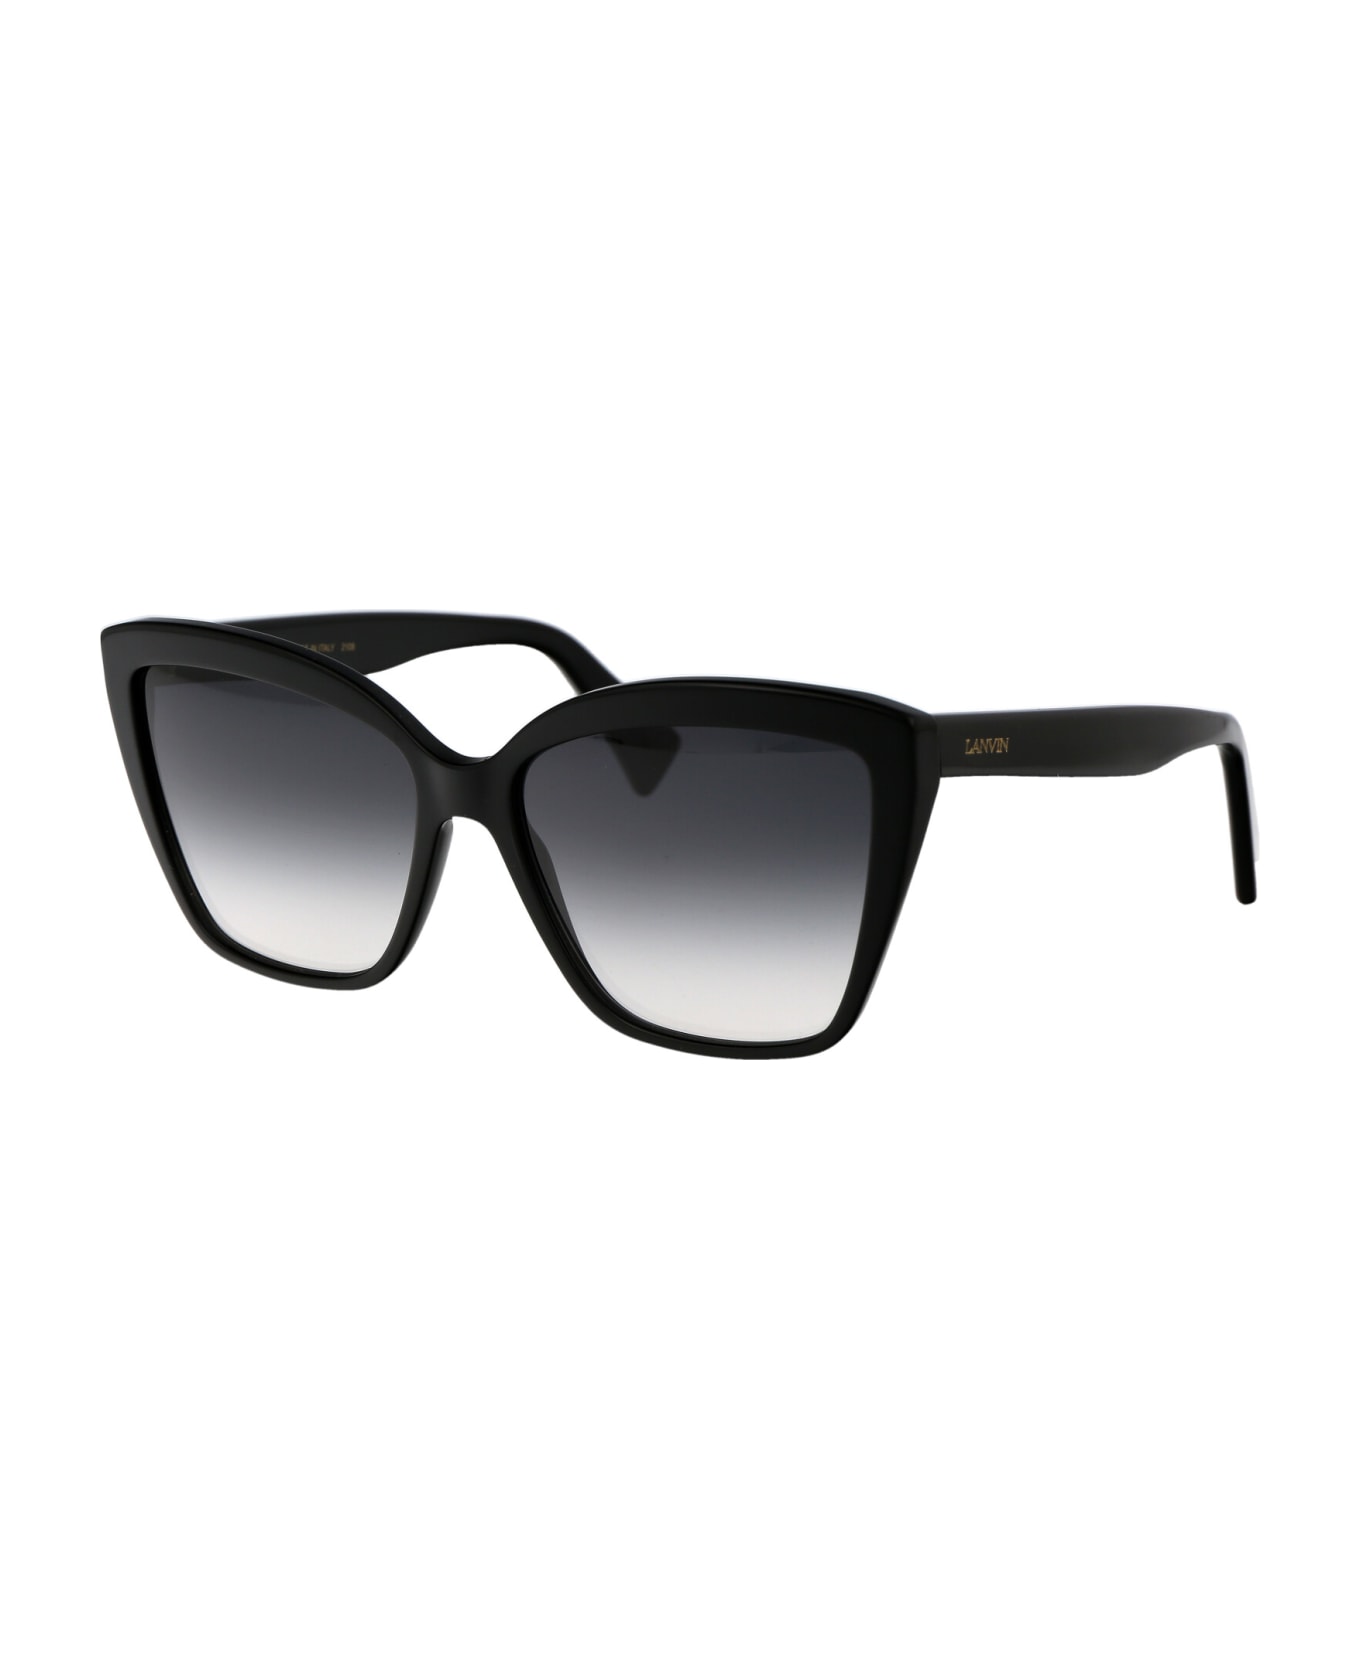 Lanvin Lnv617s Sunglasses - 001 BLACK